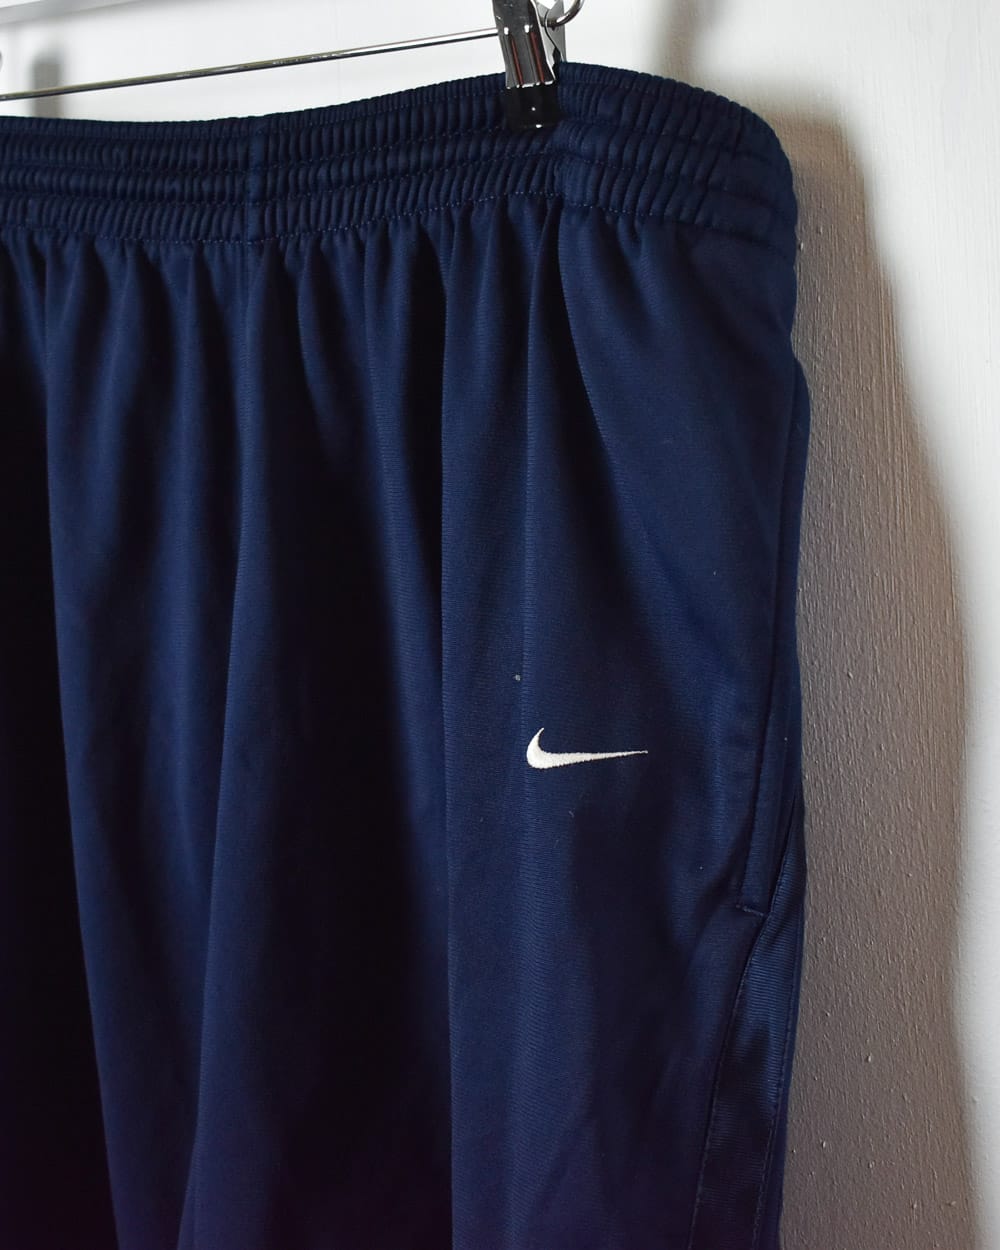 Navy Nike Shorts - XX-Large